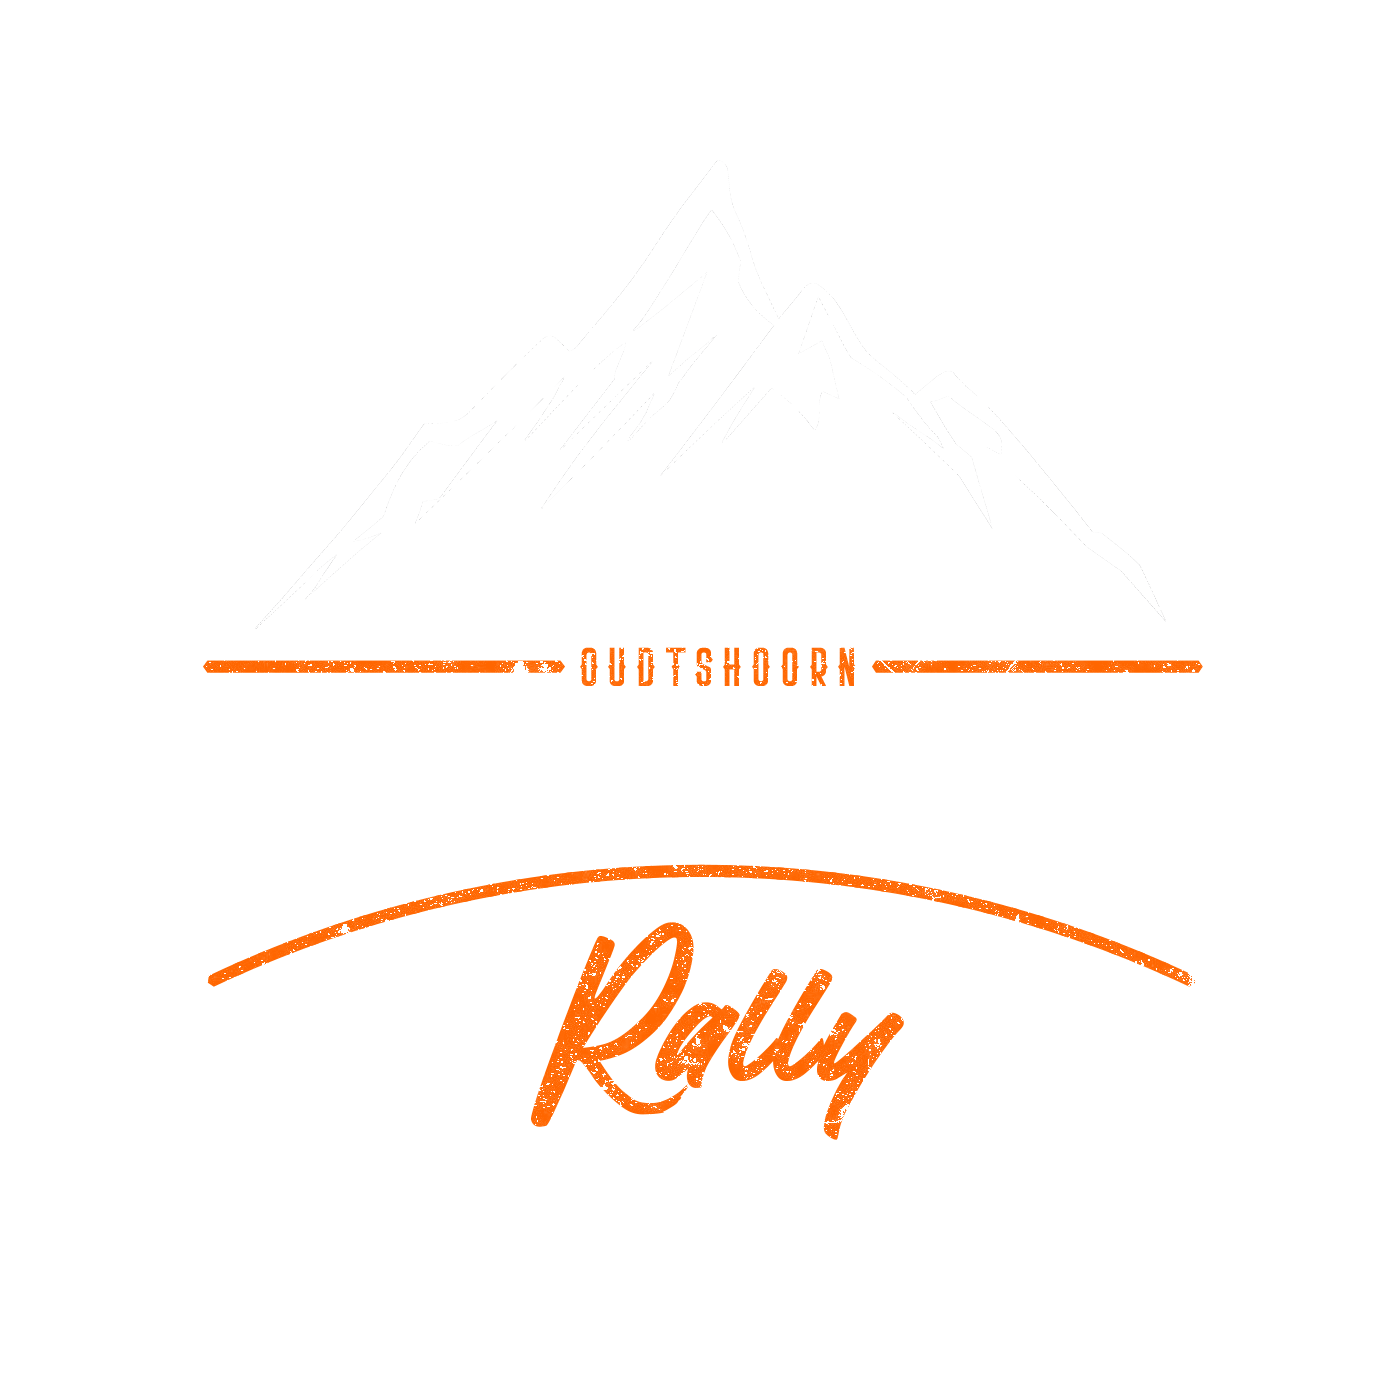 breede river rally logo